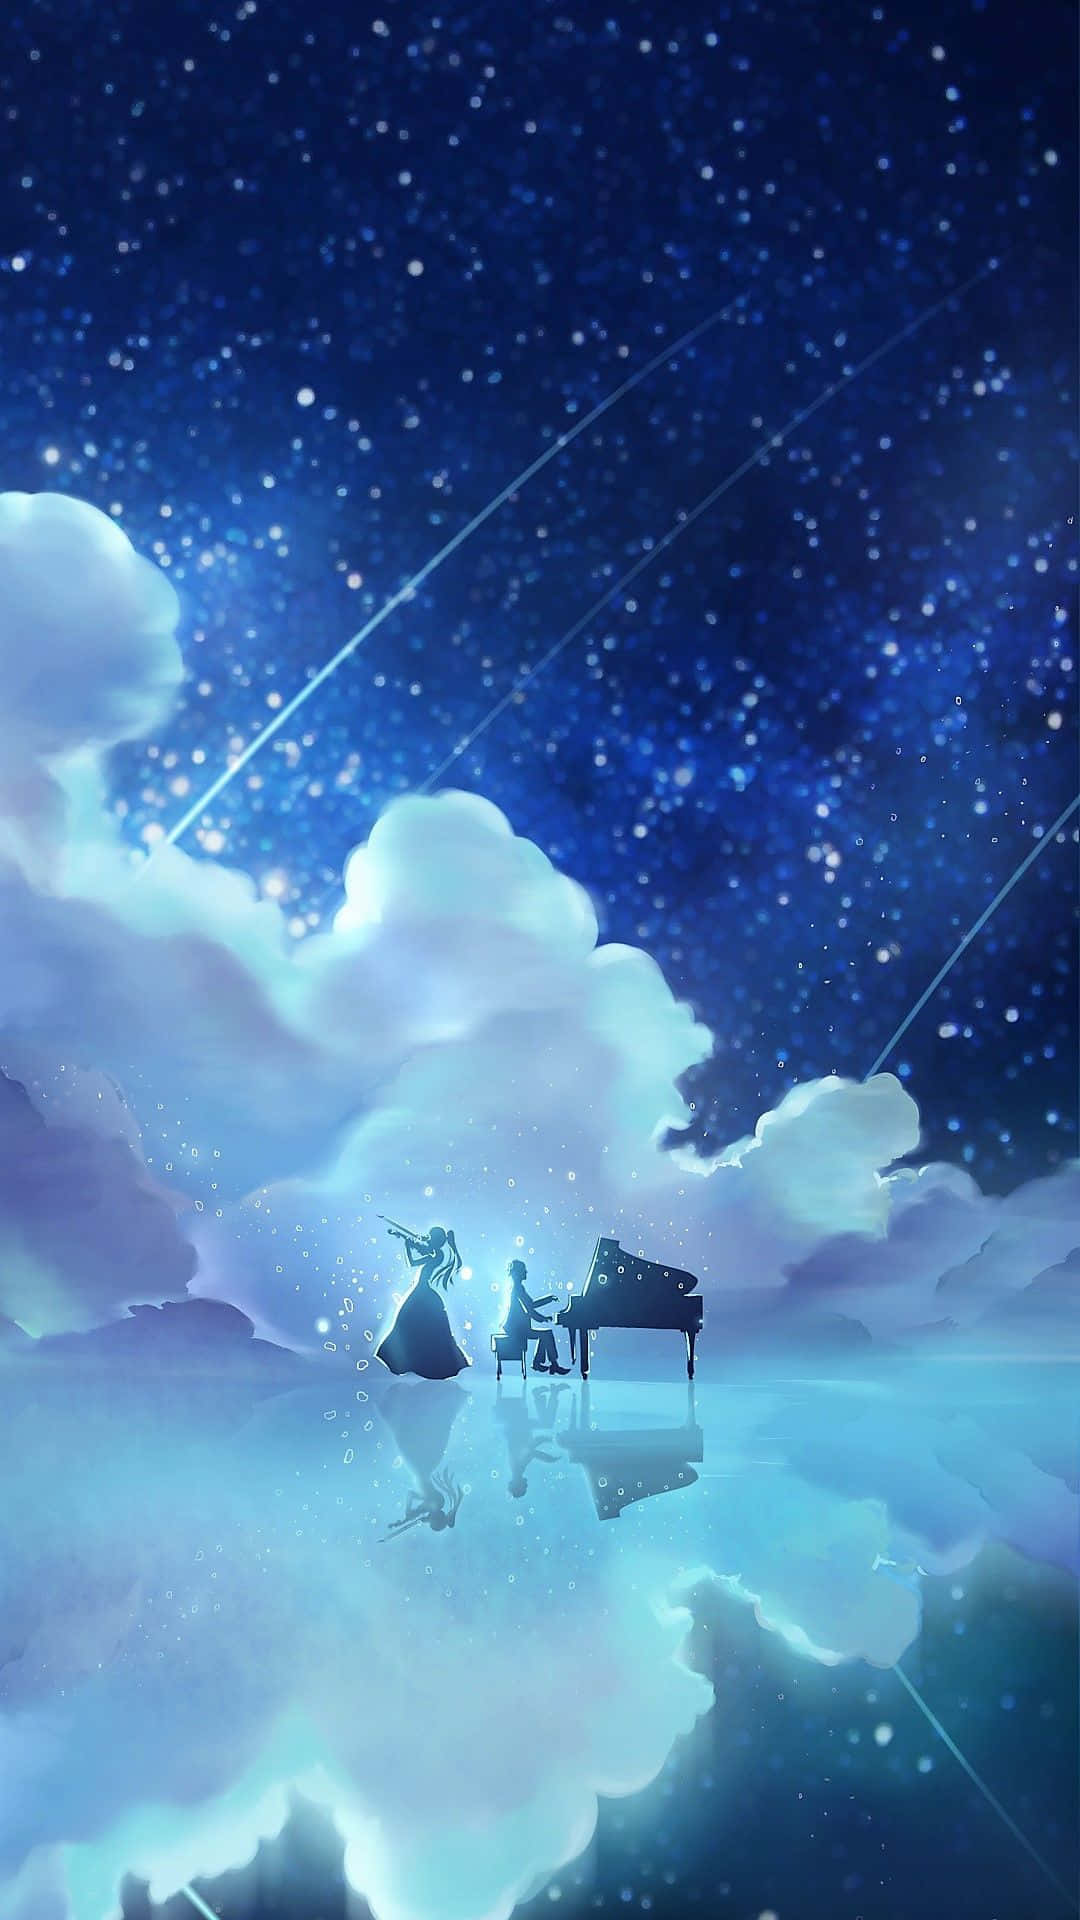 Imágenesde Anime De Nubes Del Iphone Galaxy Para Your Lie In April. Fondo de pantalla